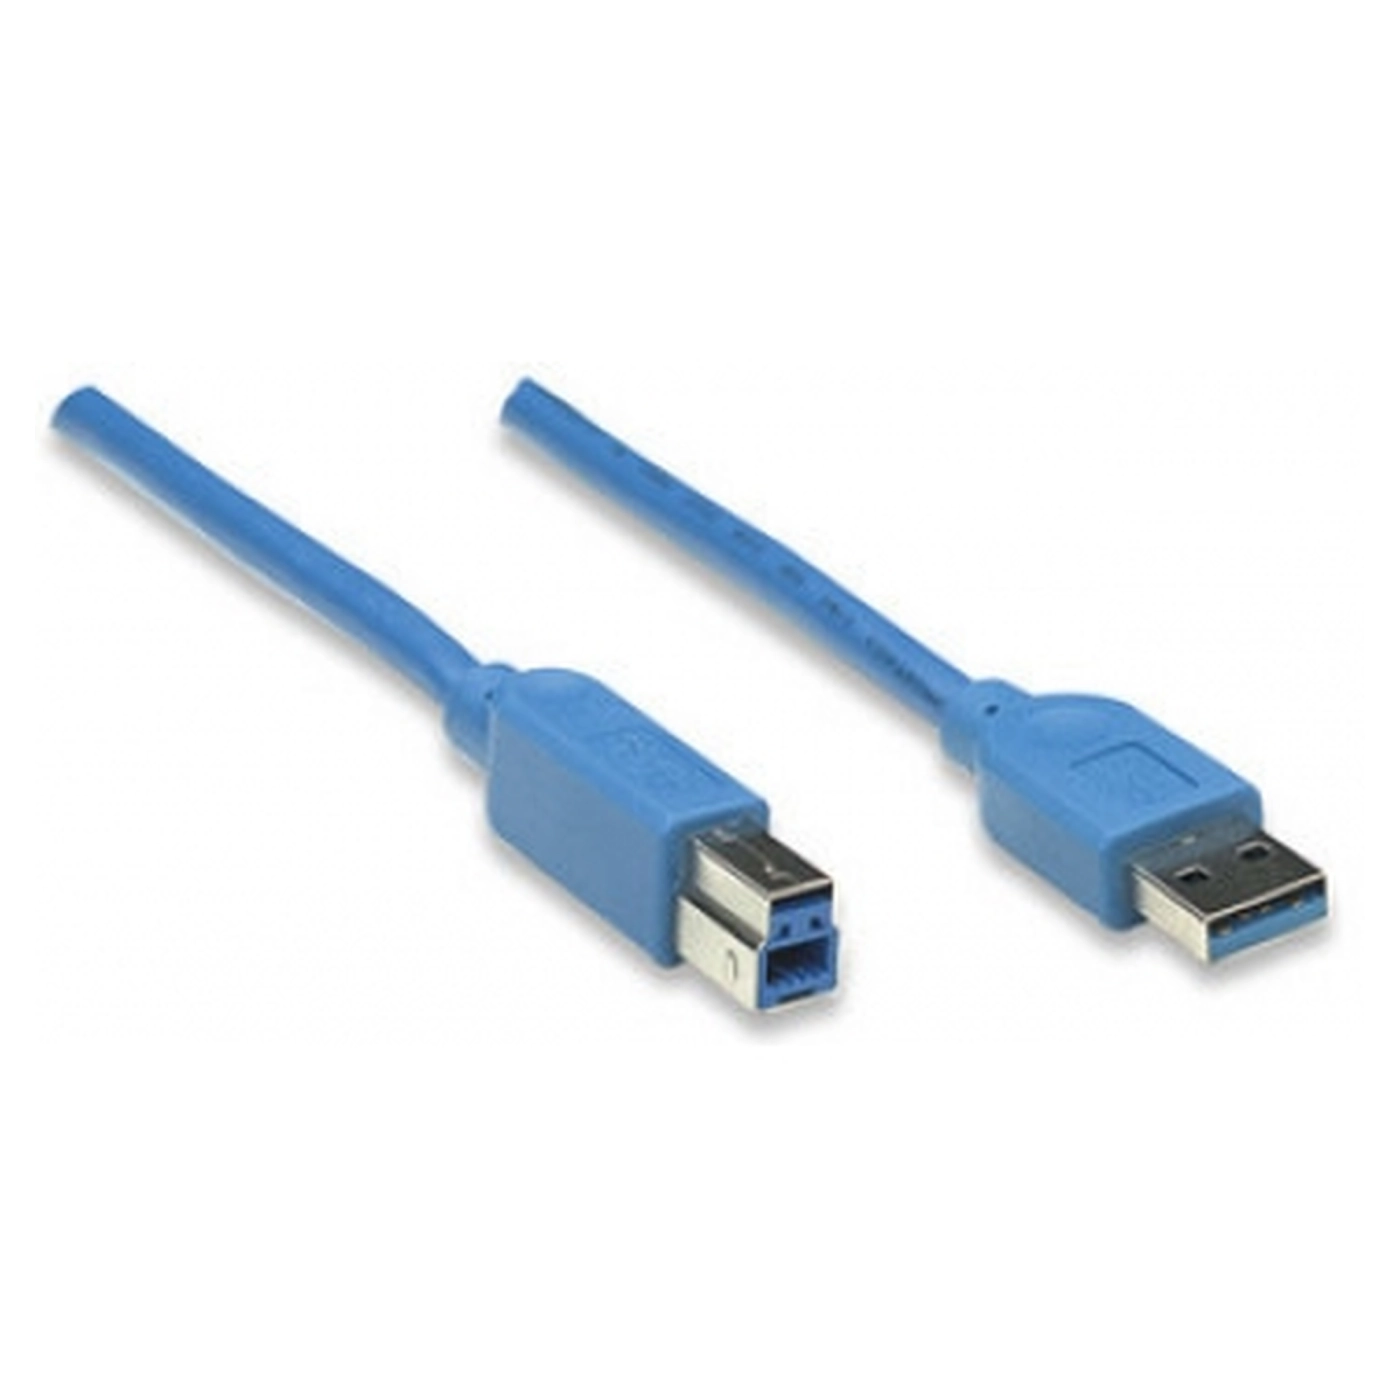 Купить Кабель для принтера USB 3.0 AM/BM 1.8m Atcom (12823) - фото 2